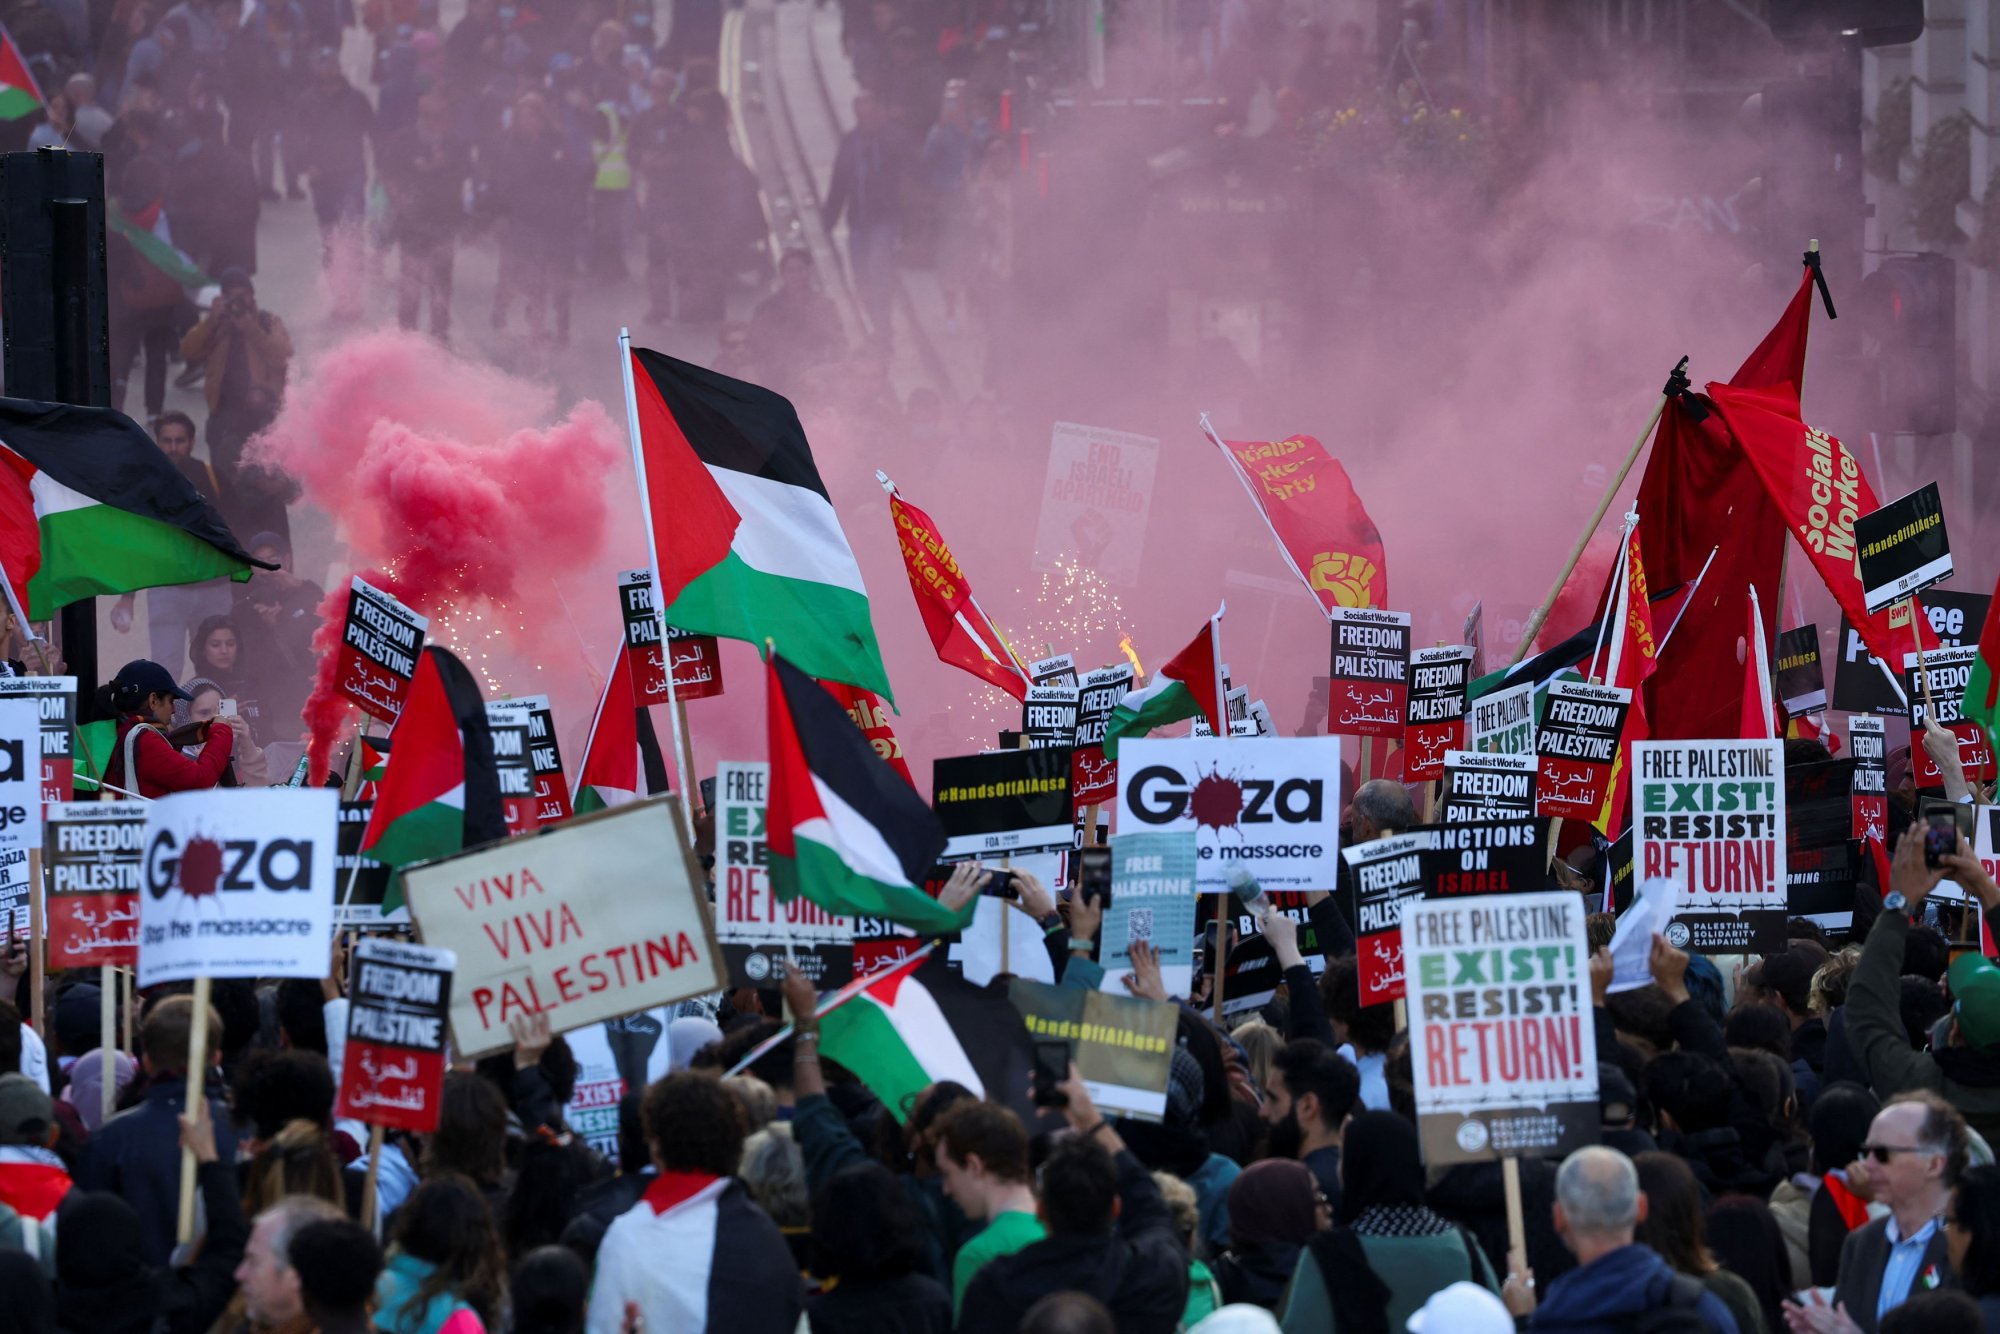 Λονδίνο: Μεγάλη πορεία υπέρ των Παλαιστινίων – Σοβαρά επεισόδια με αντιδιαδηλωτές  στο κέντρο της βρετανικής πρωτεύουσας